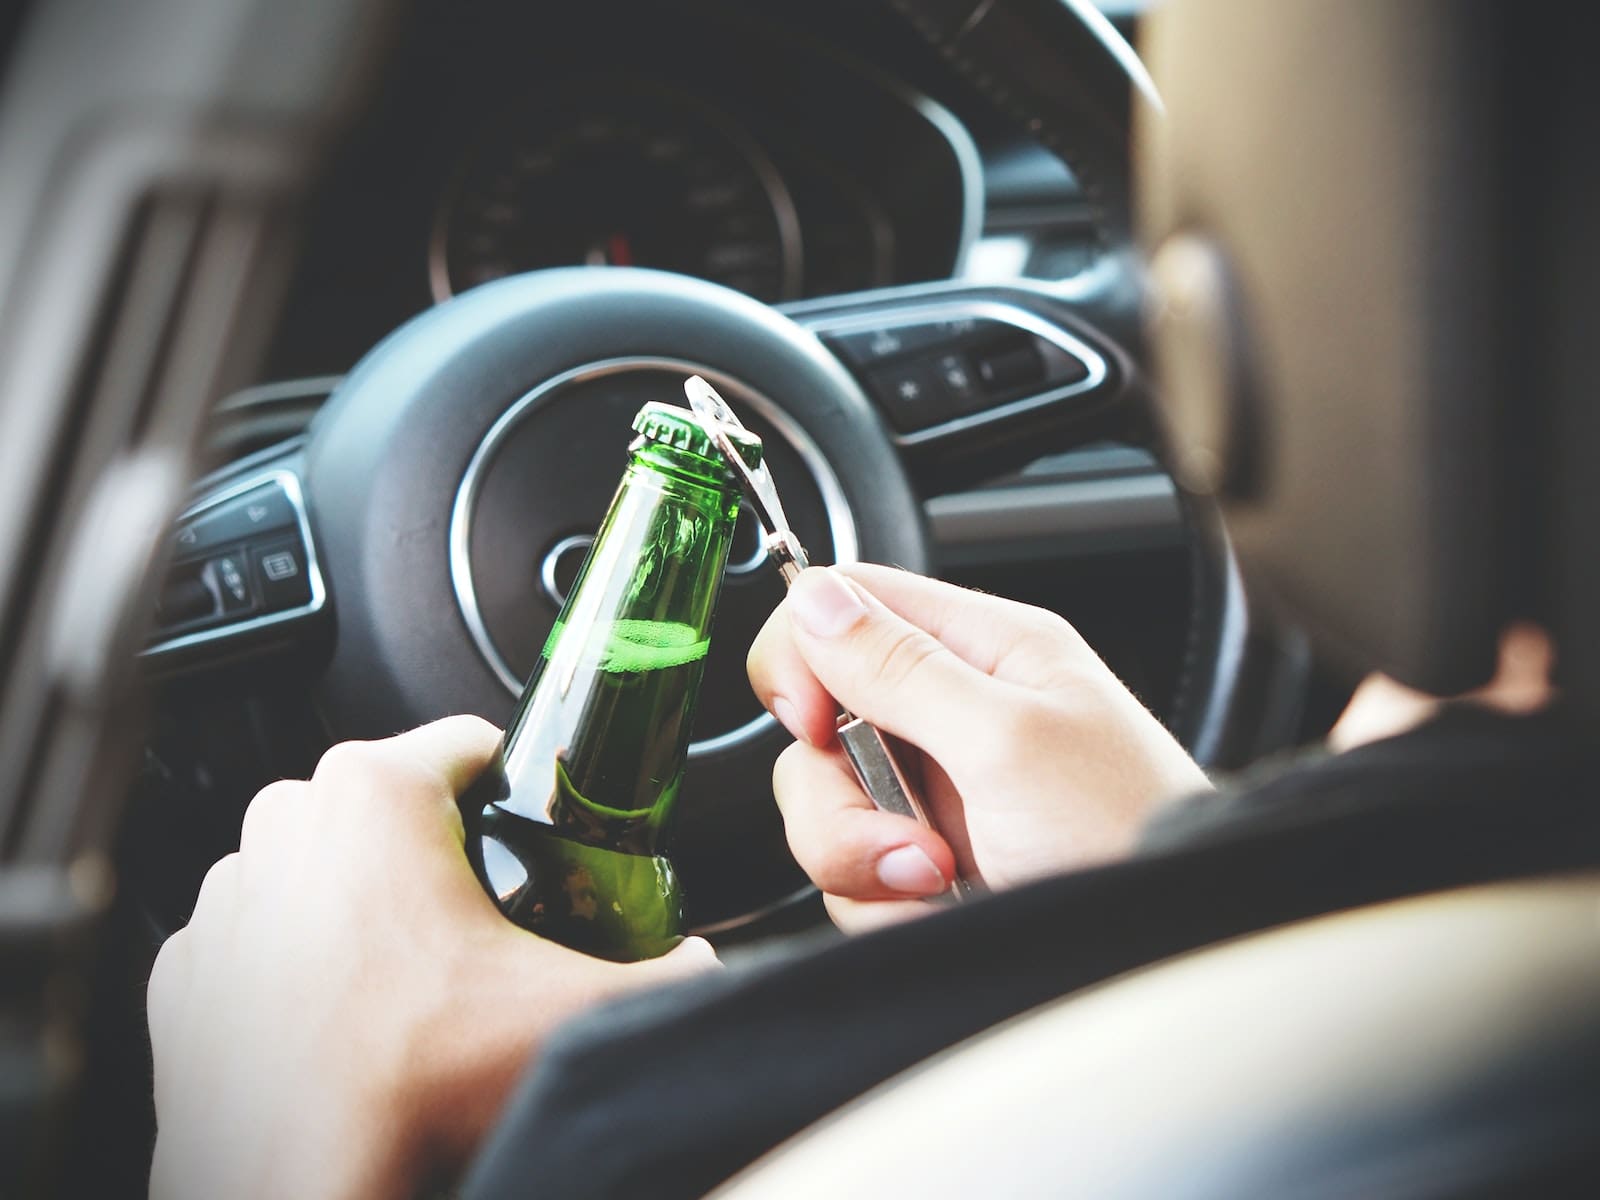 القيادة تحت تأثير الكحول